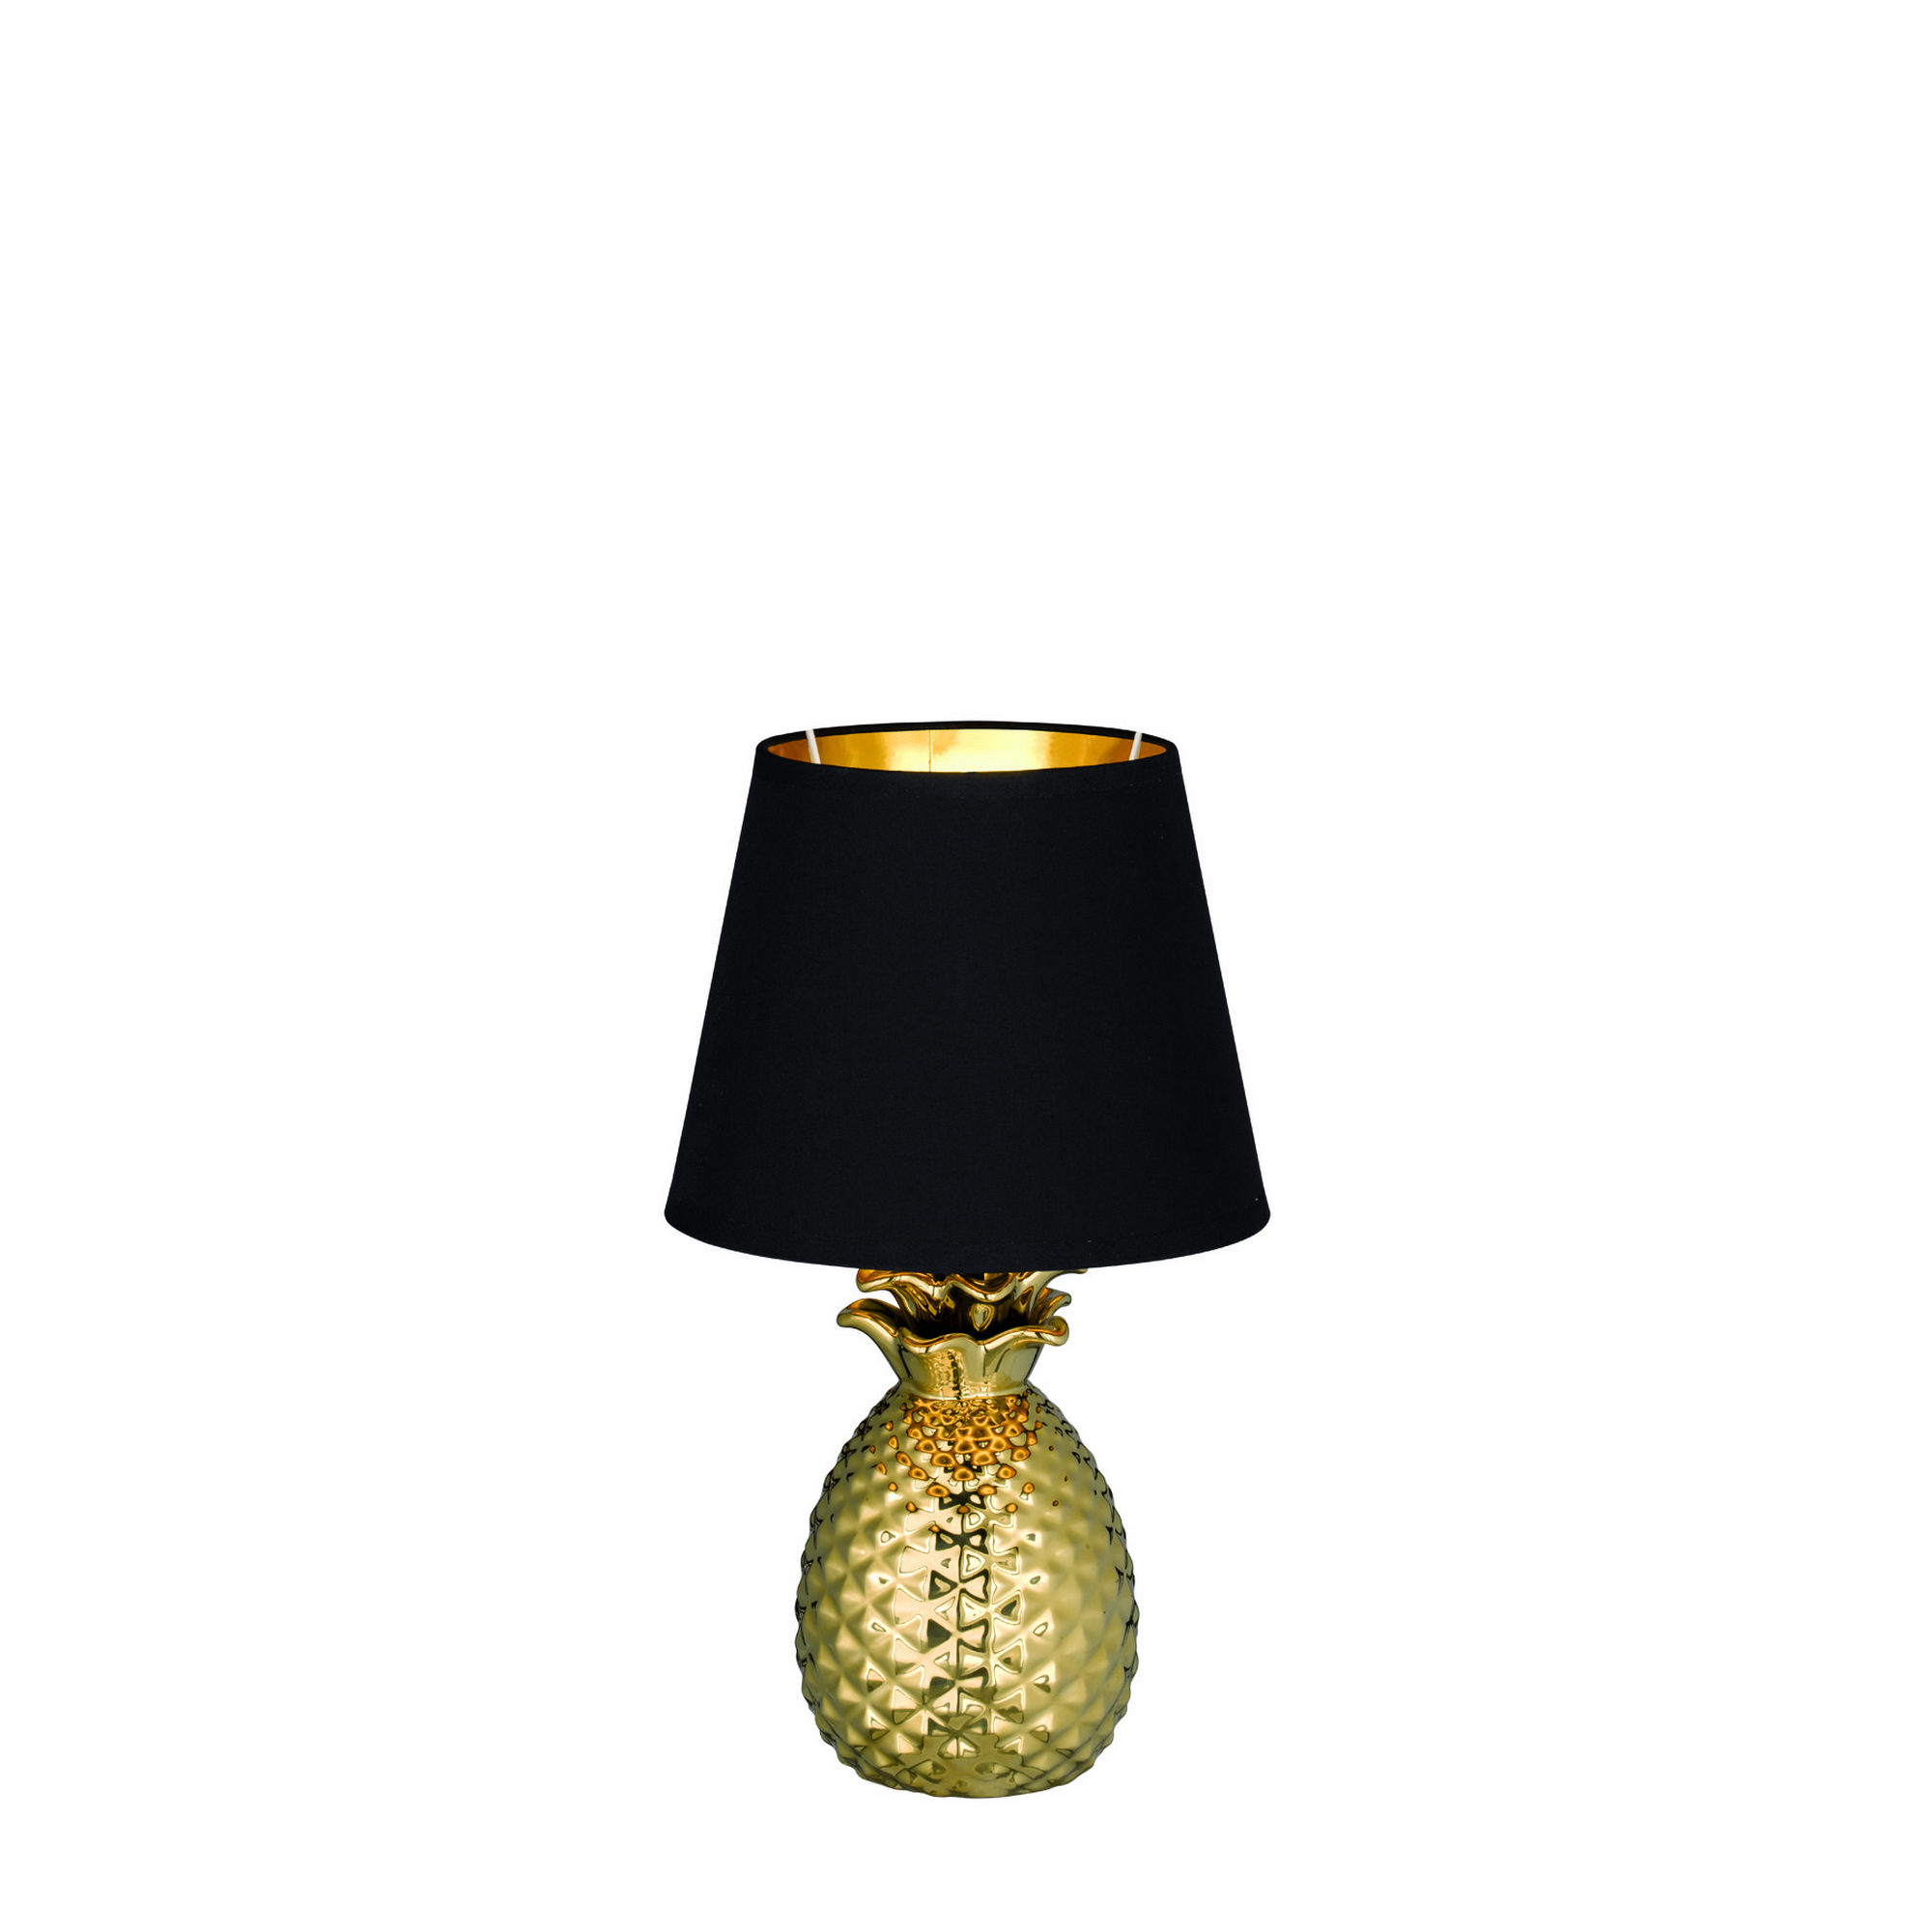 Tischleuchte 'Pineapple' schwarz/goldfarben Ø 20 cm + product picture